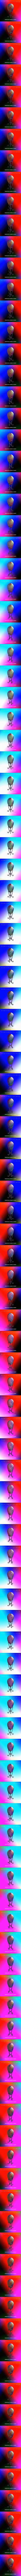 Fabergé Egg: Chemical Element